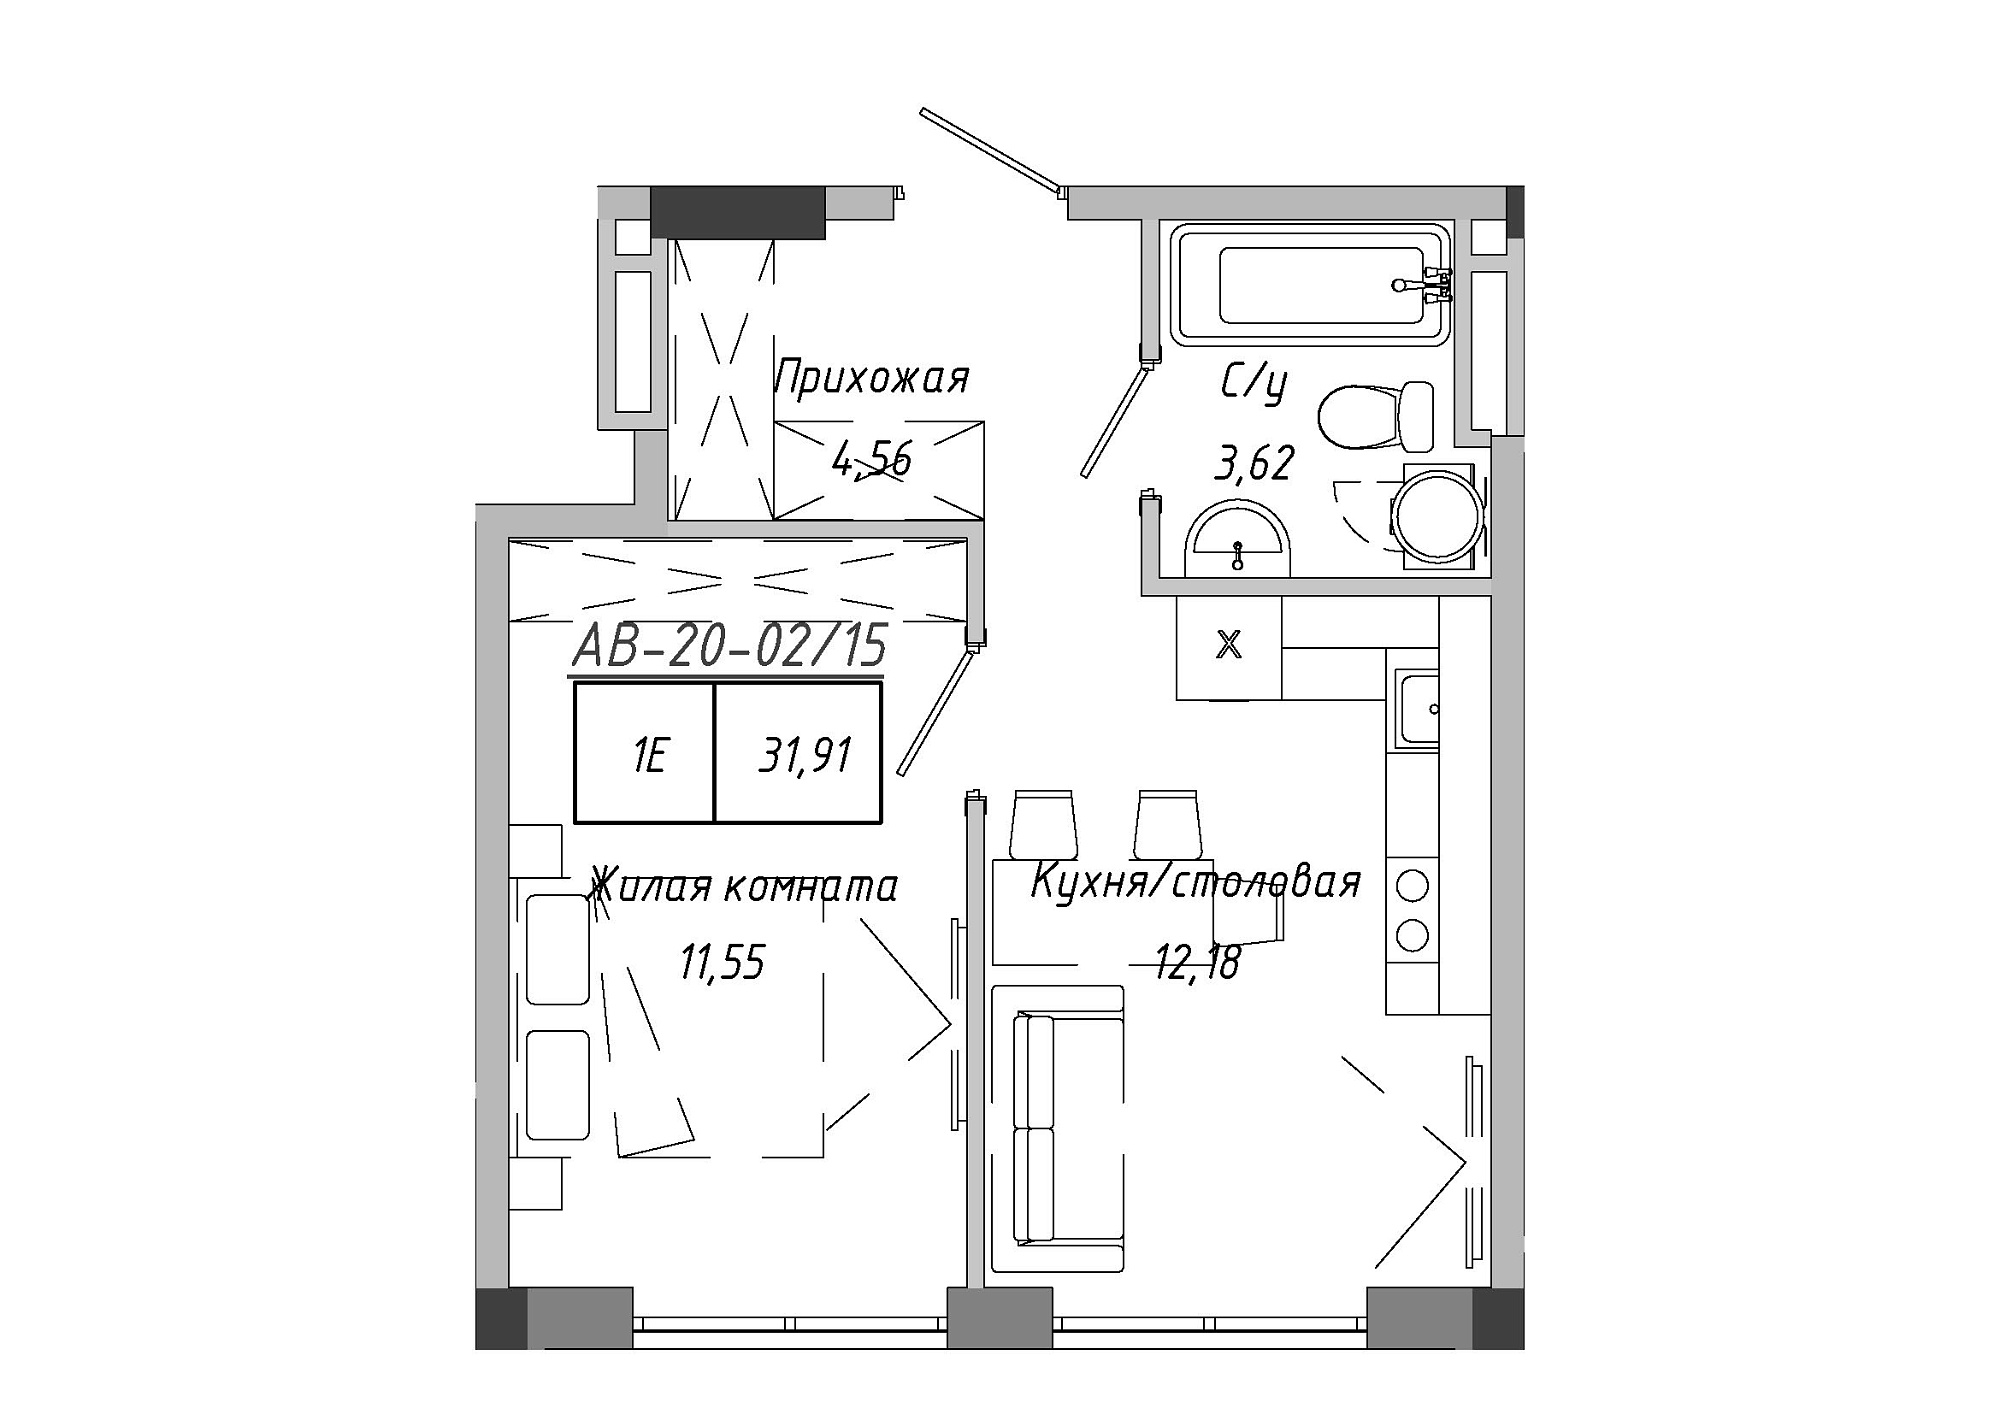 Планування 1-к квартира площею 31.51м2, AB-20-02/00015.